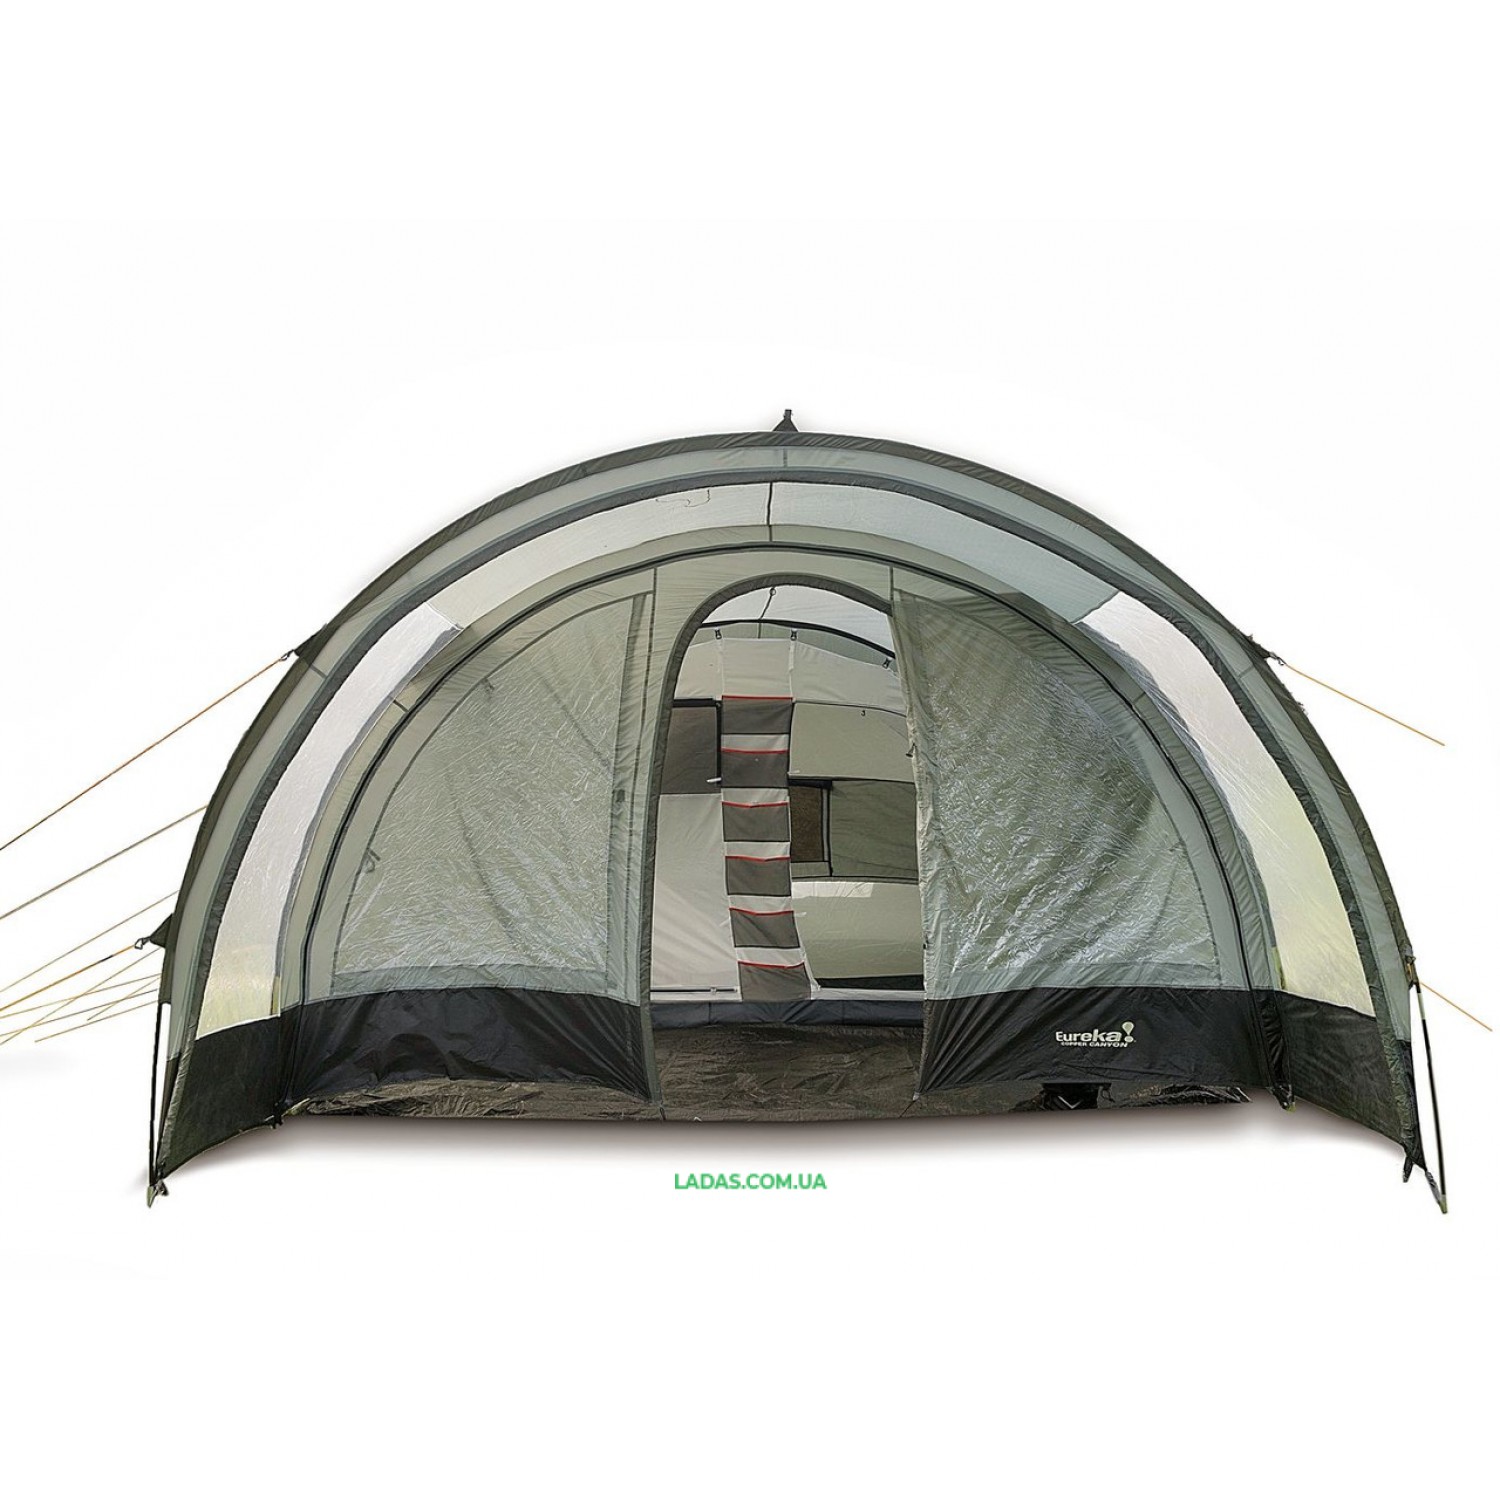 Пятиместная двухкомнатная палатка Eureka! Copper Сamp 1620